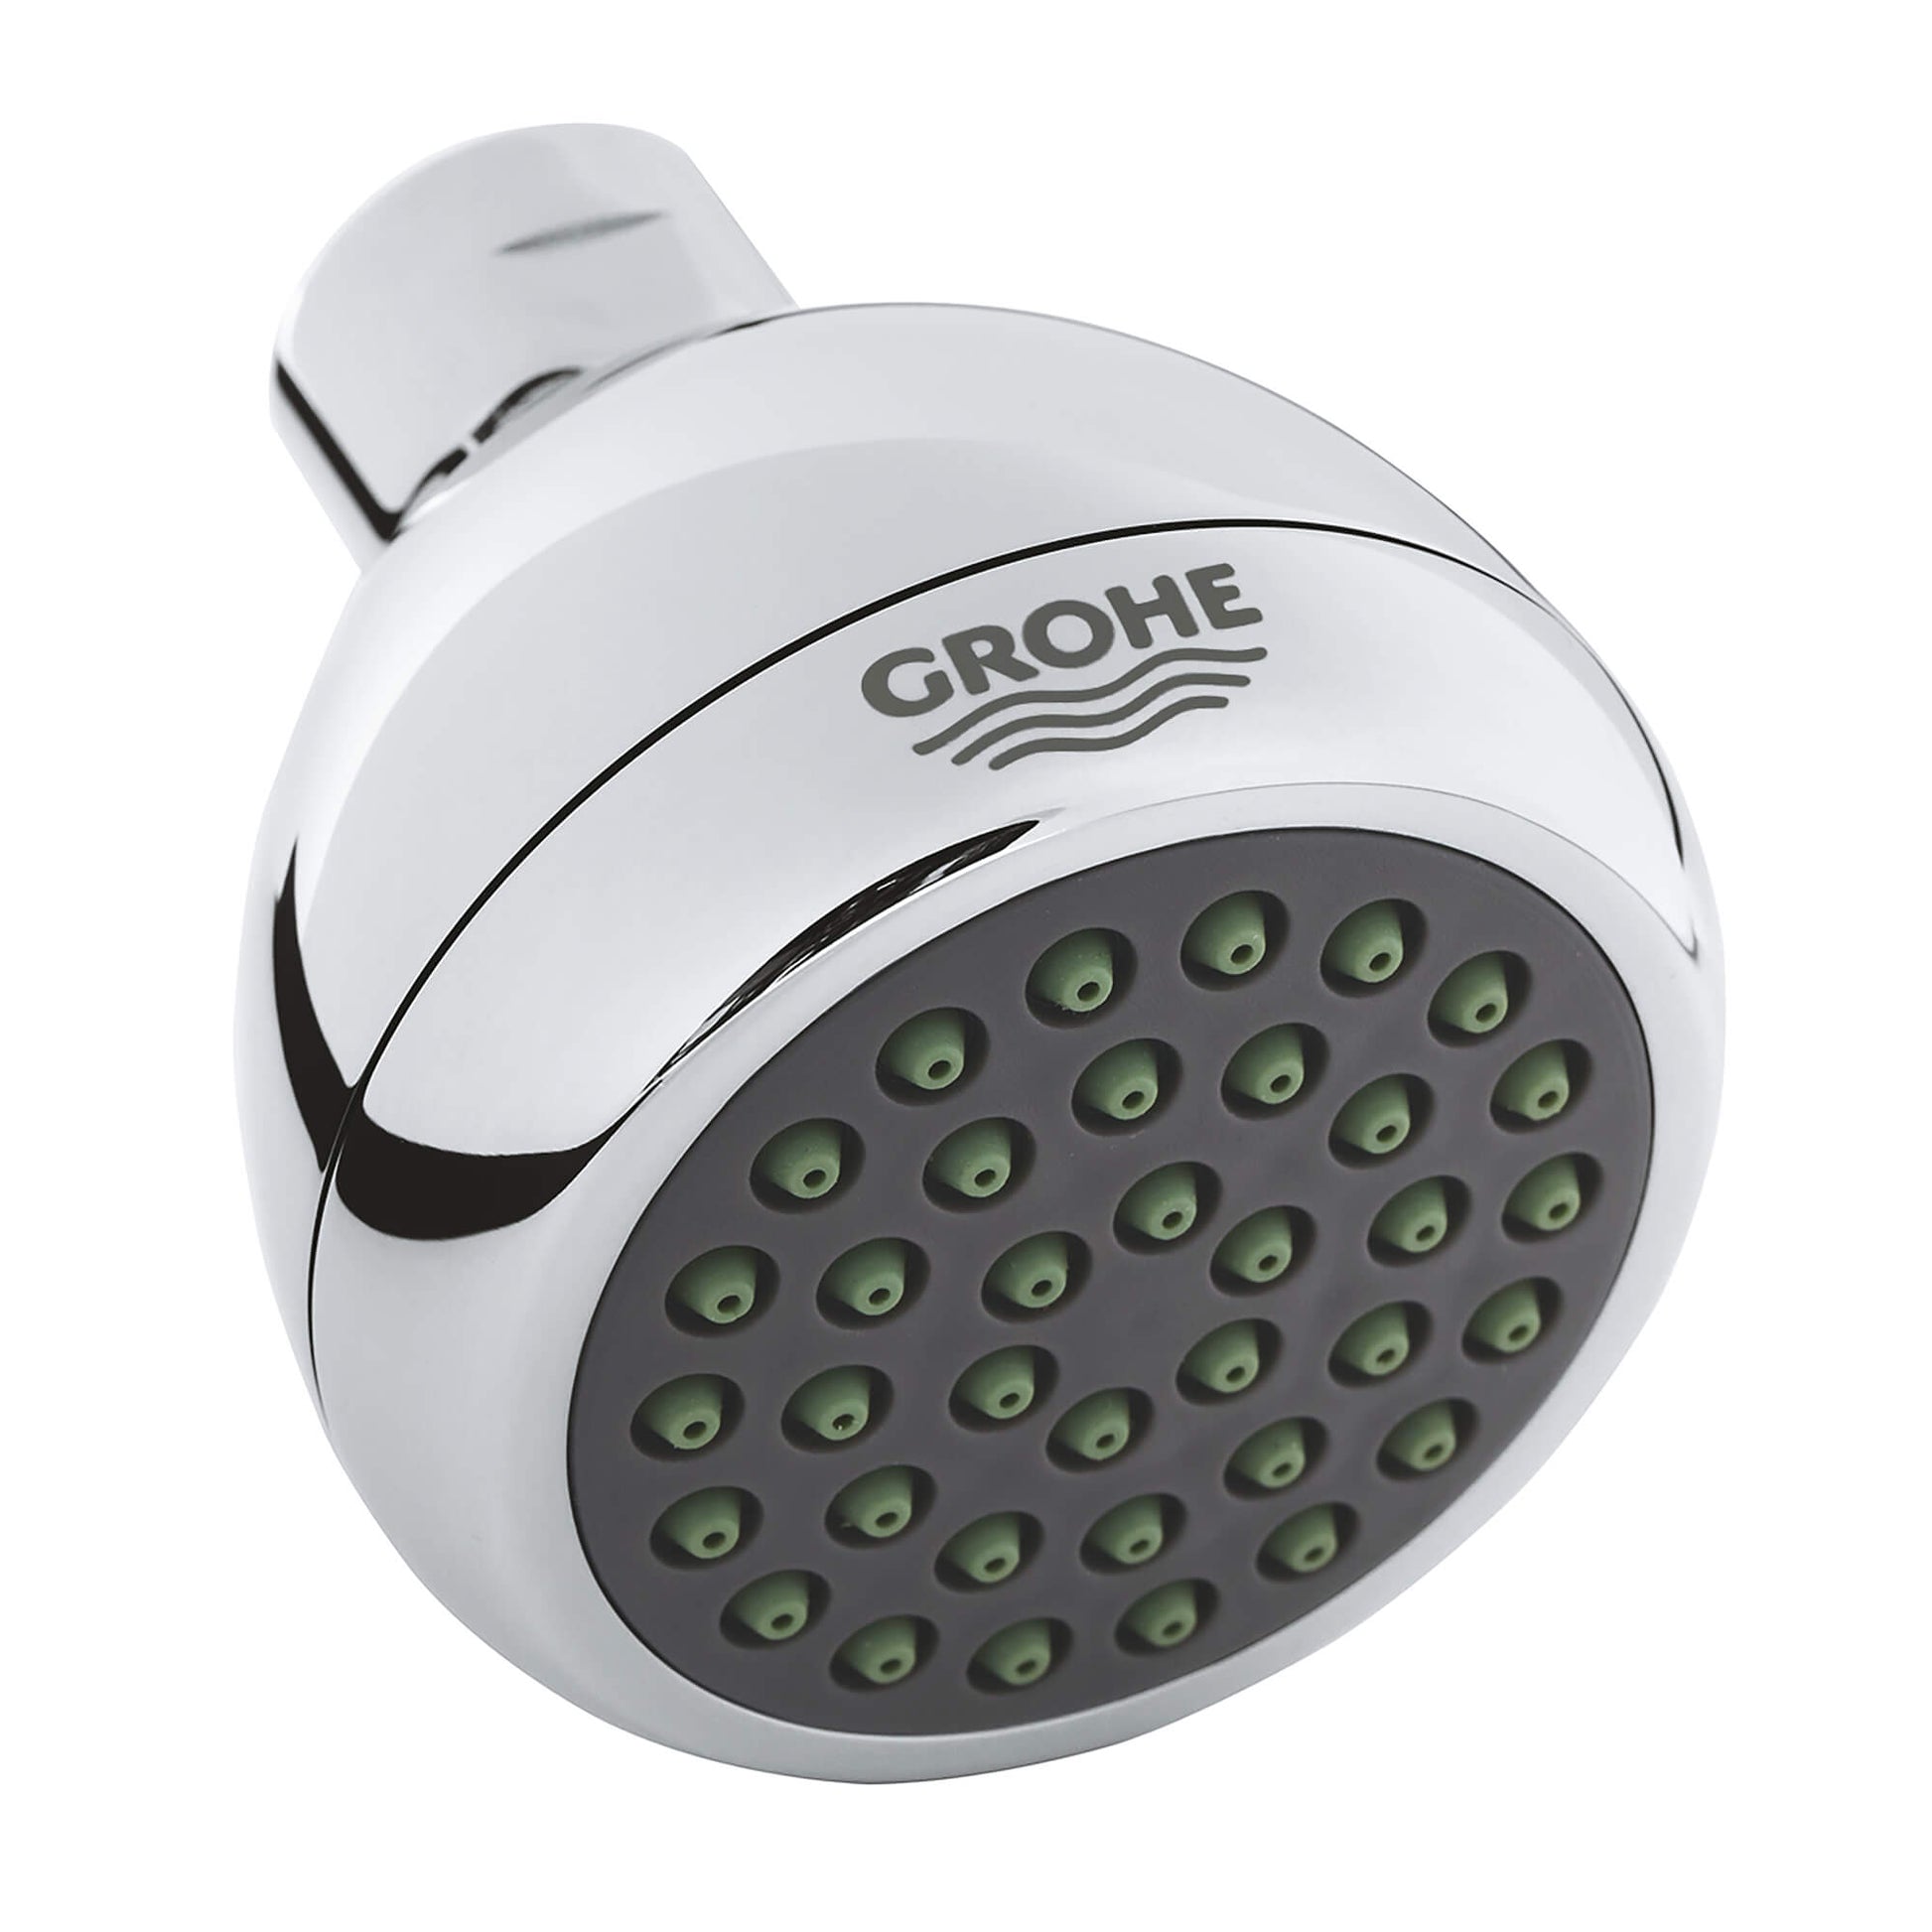 GROHE 2834200E Relexa Chrome 65 Shower Head, 2-1/2" - 1 Spray, 1.5 gpm